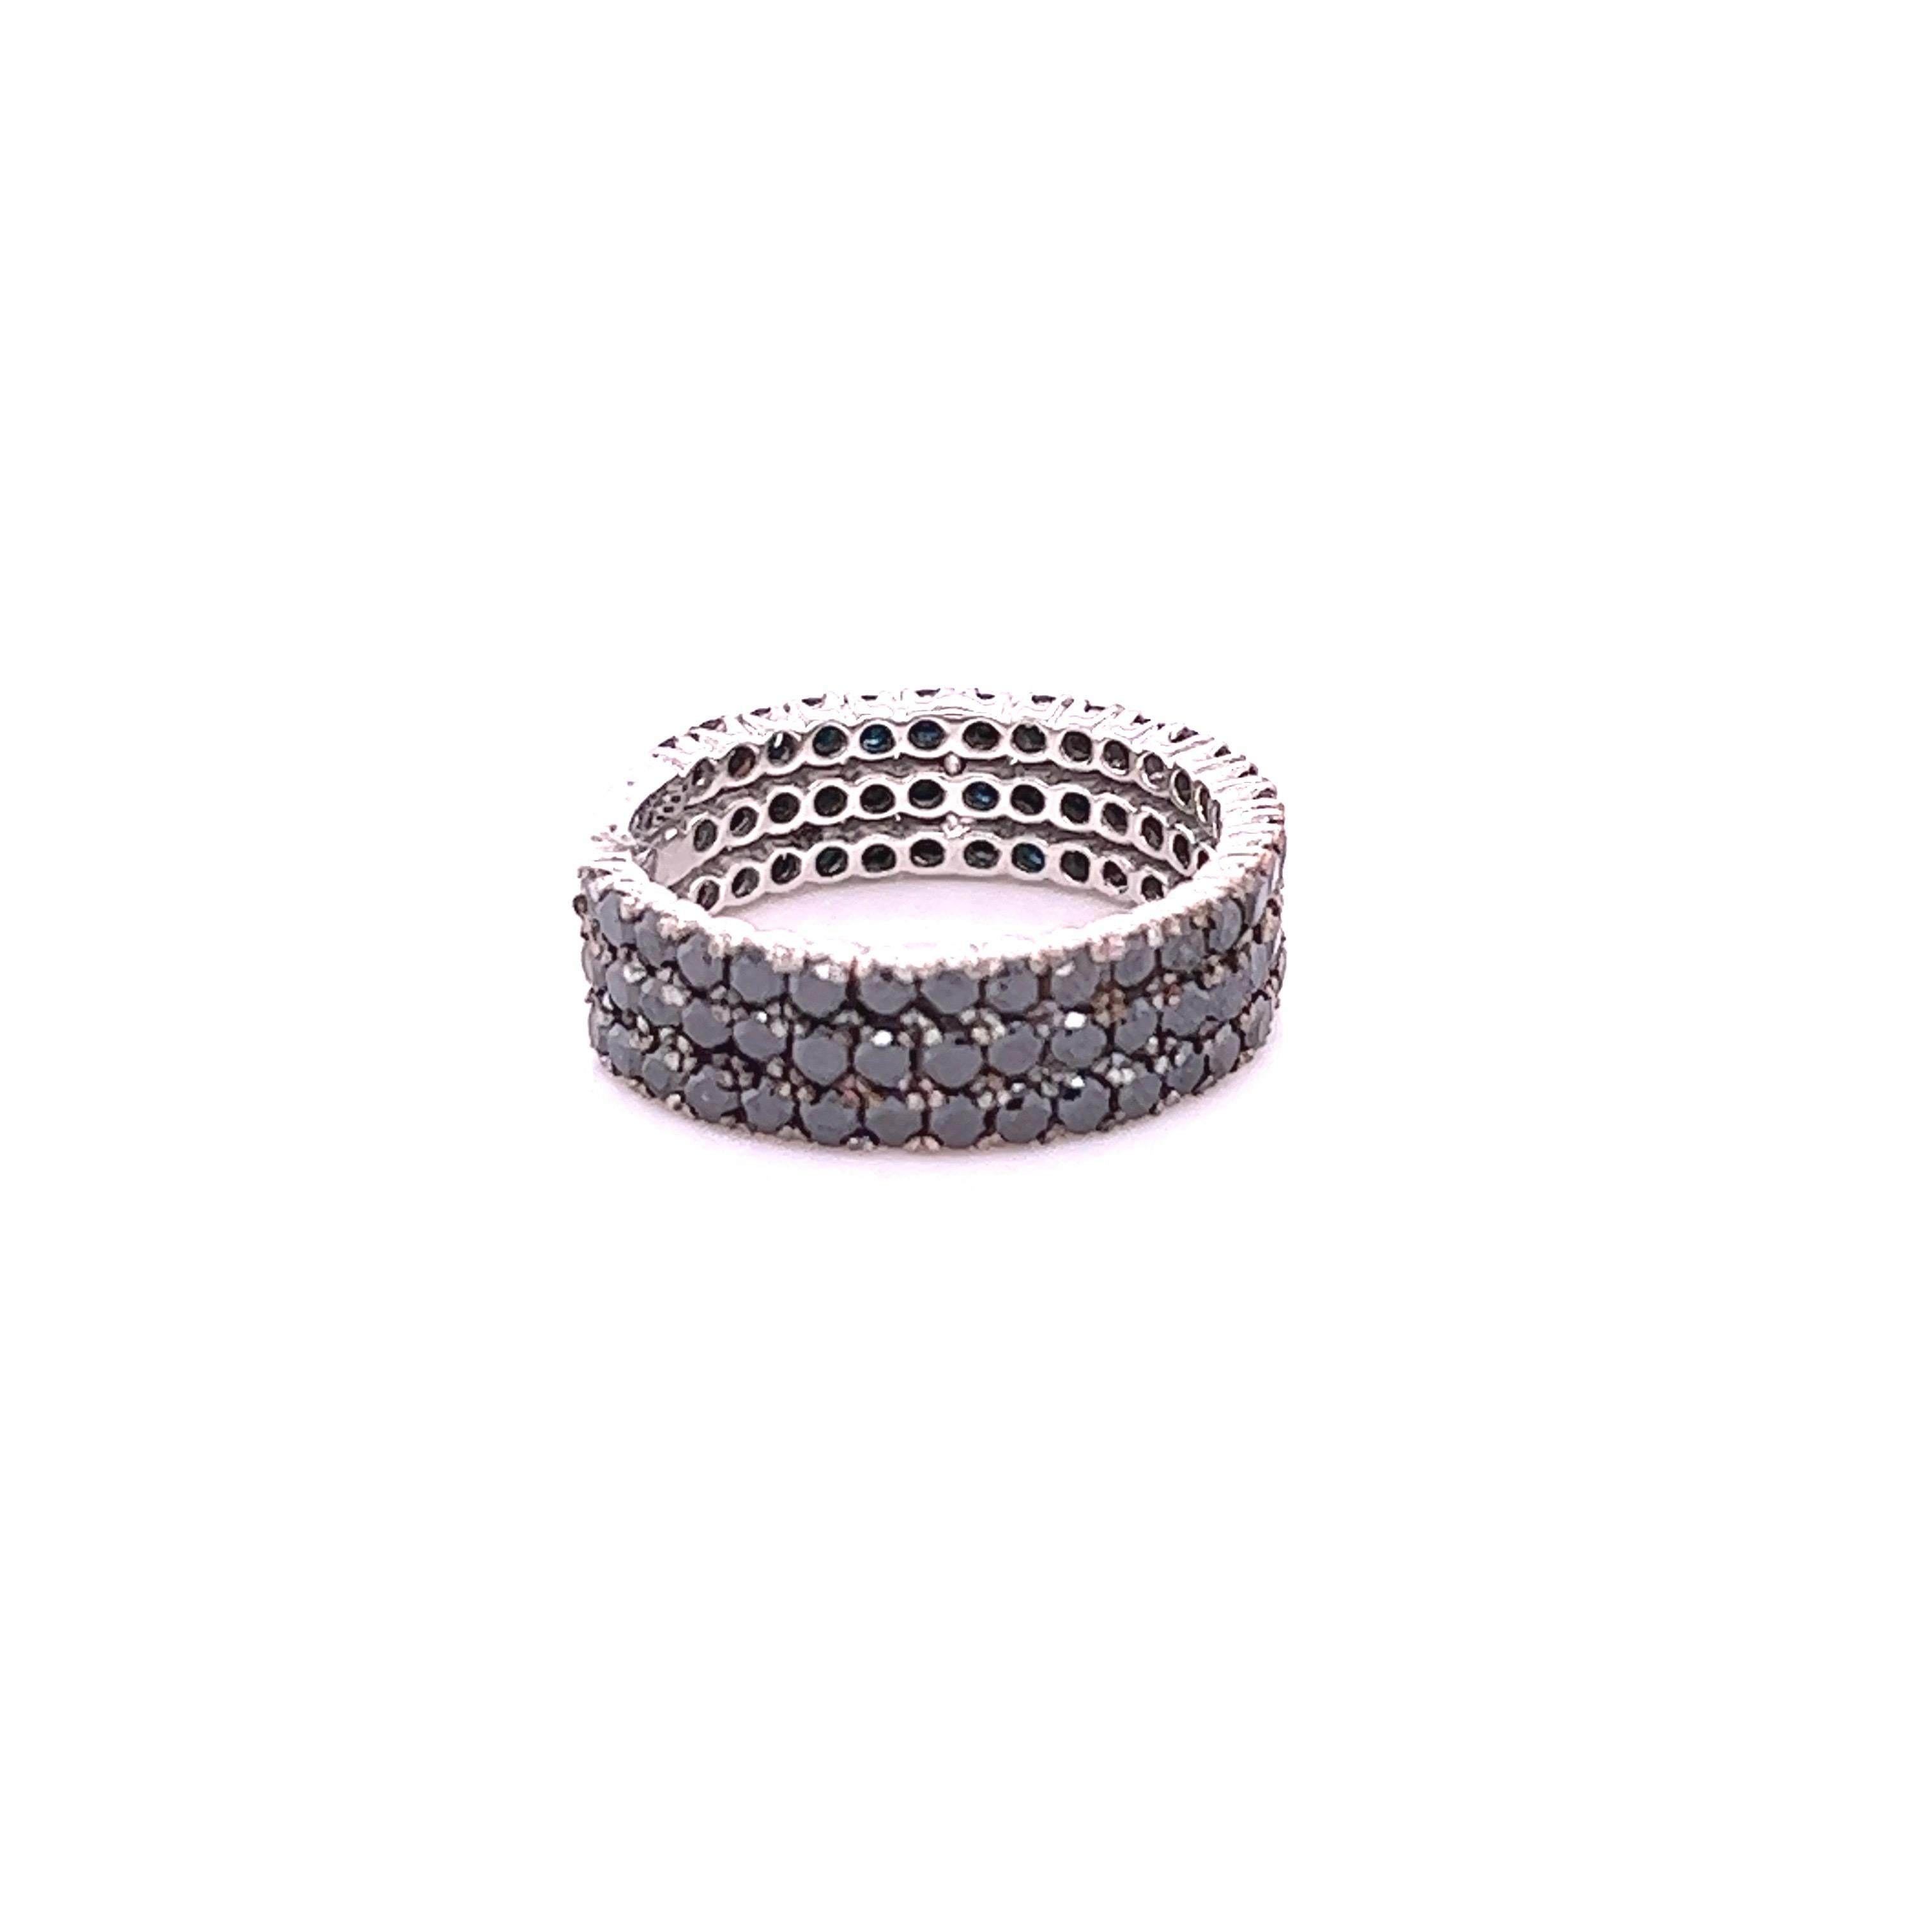 Dieser Ring enthält 98 schwarze Diamanten im Rundschliff mit einem Gewicht von 2,16 Karat. 
Die schwarzen Diamanten sind natürlich und werden farblich behandelt, um ihre schwarze Farbe zu erhalten. 

Er ist in 14 Karat Weißgold gefasst und hat ein